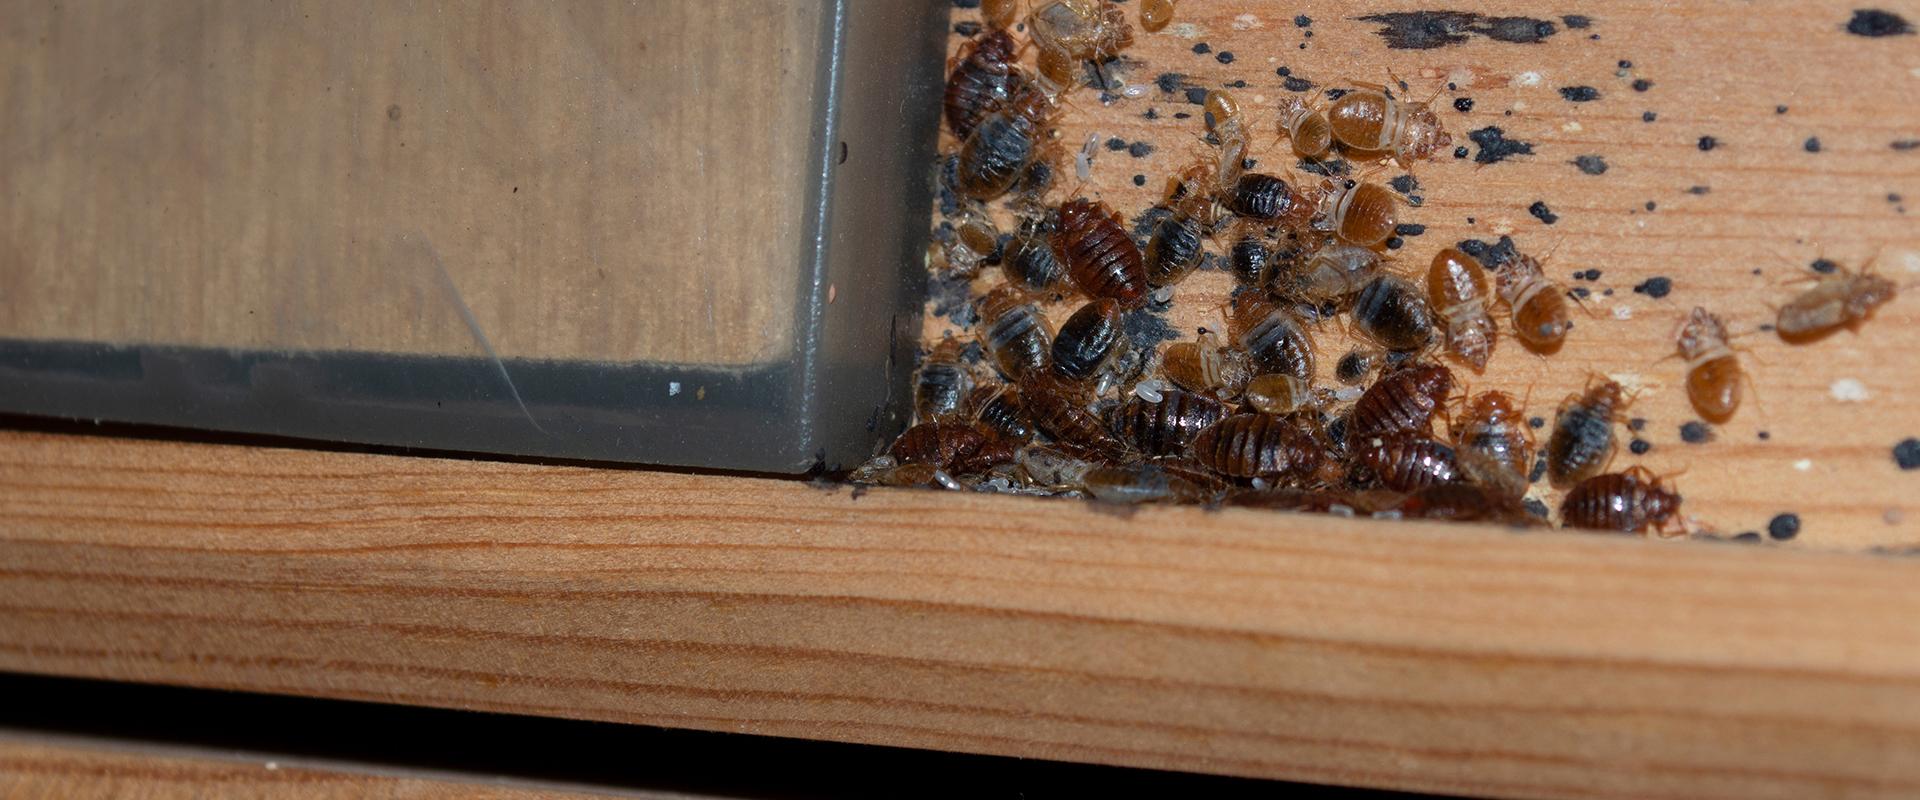 bedbug on box spring